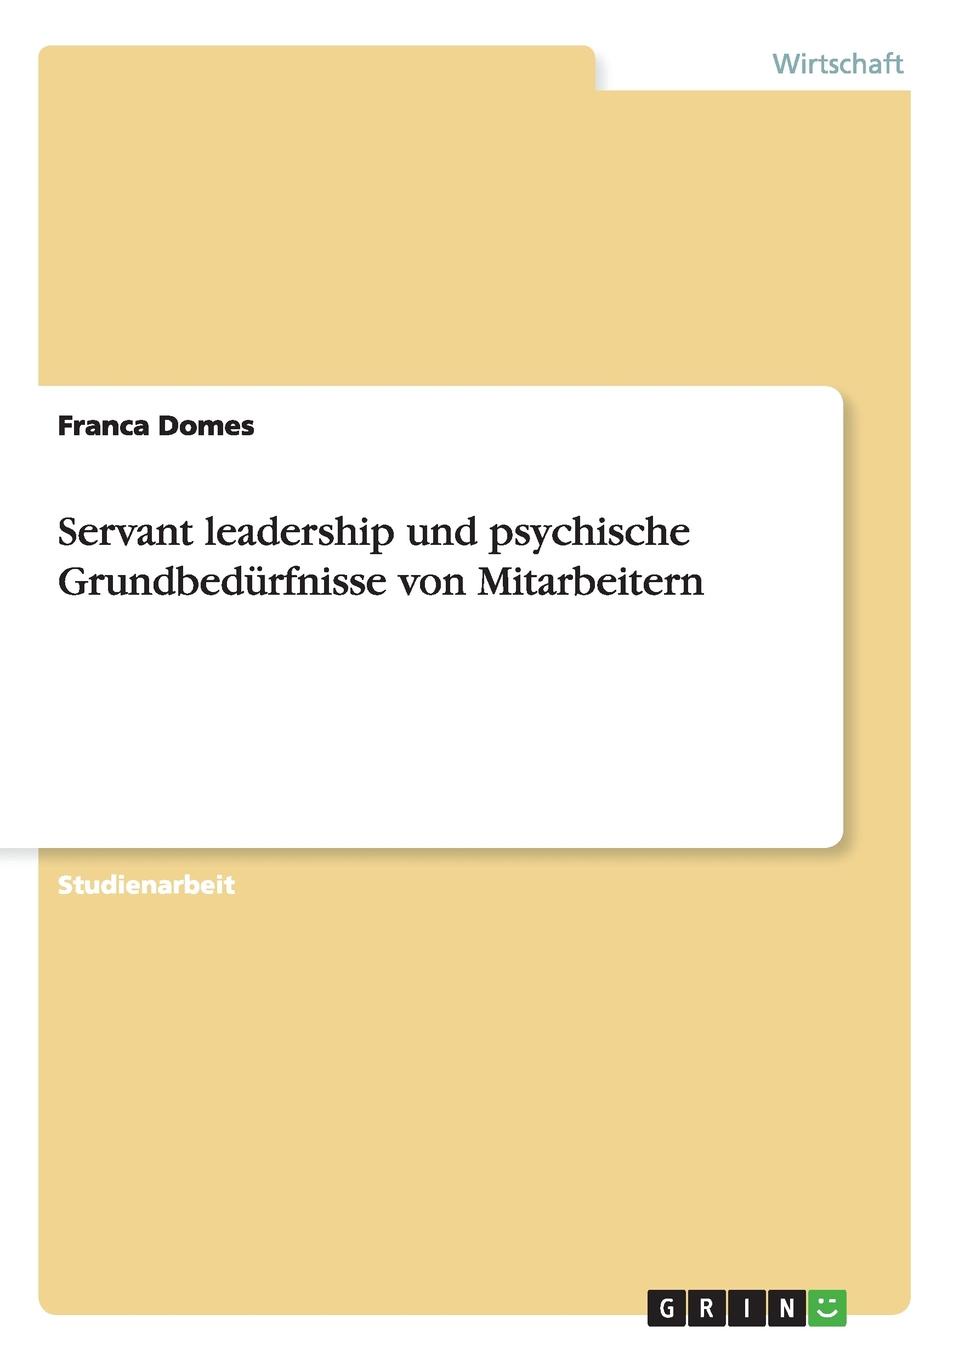 Franca Domes Servant leadership und psychische Grundbedurfnisse von Mitarbeitern